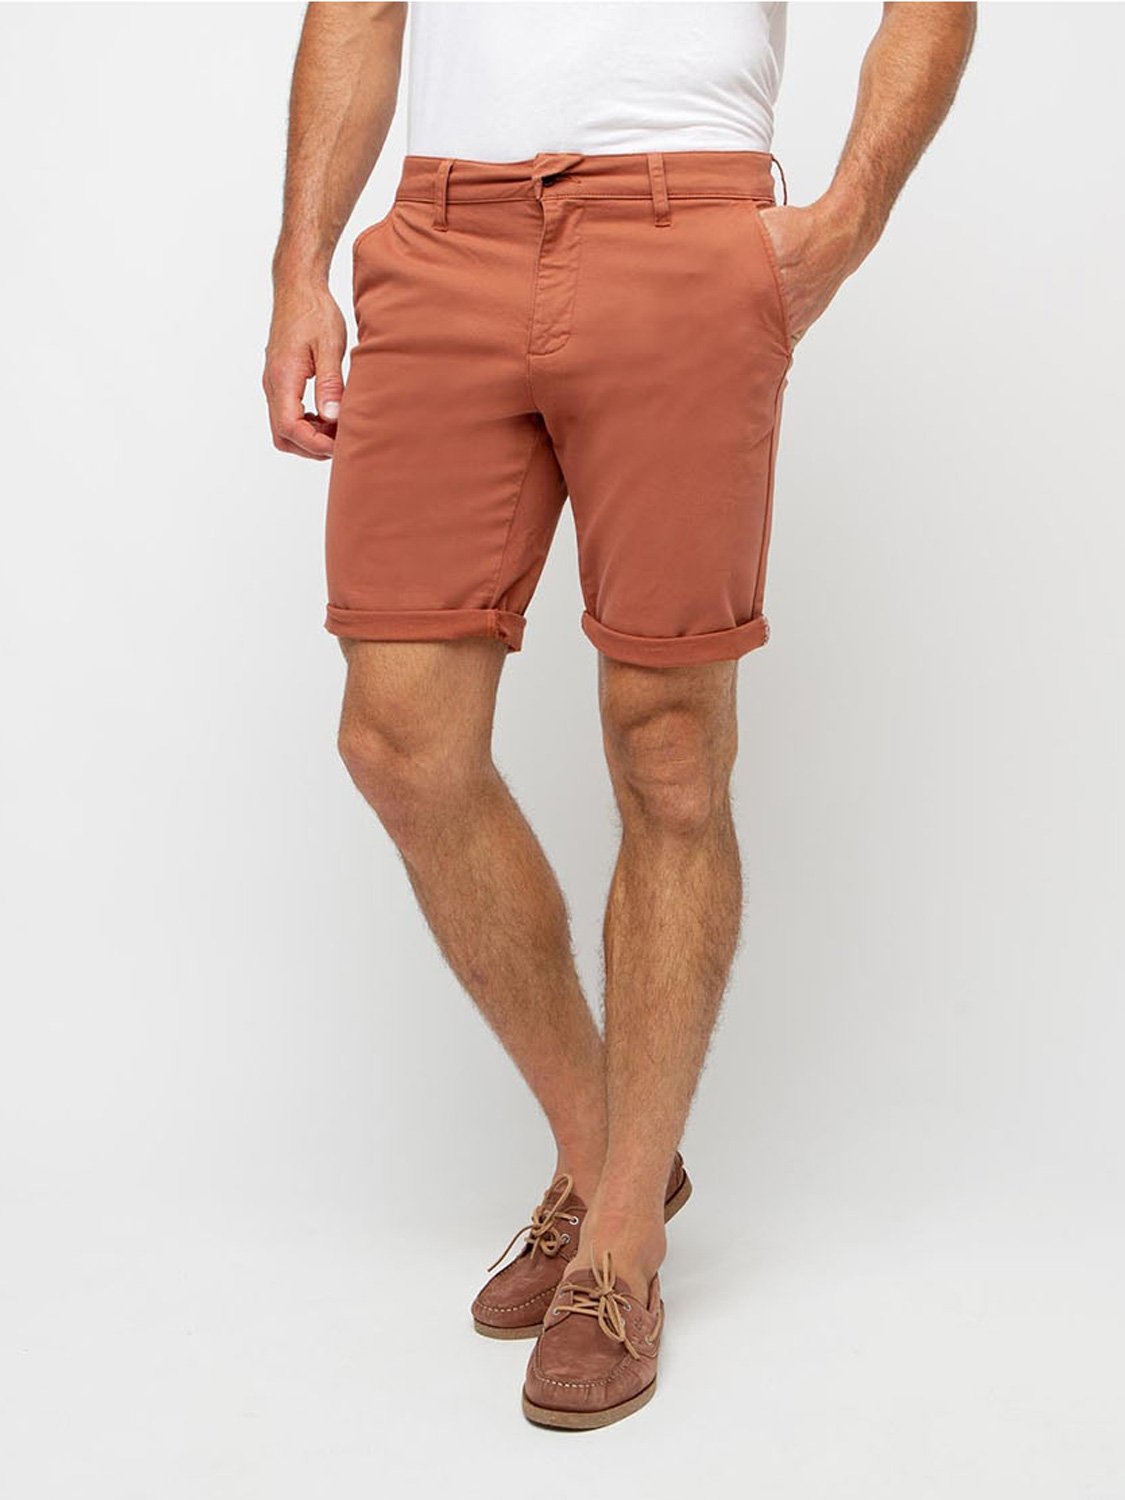 Shorts Homme Coton Biologique Orange